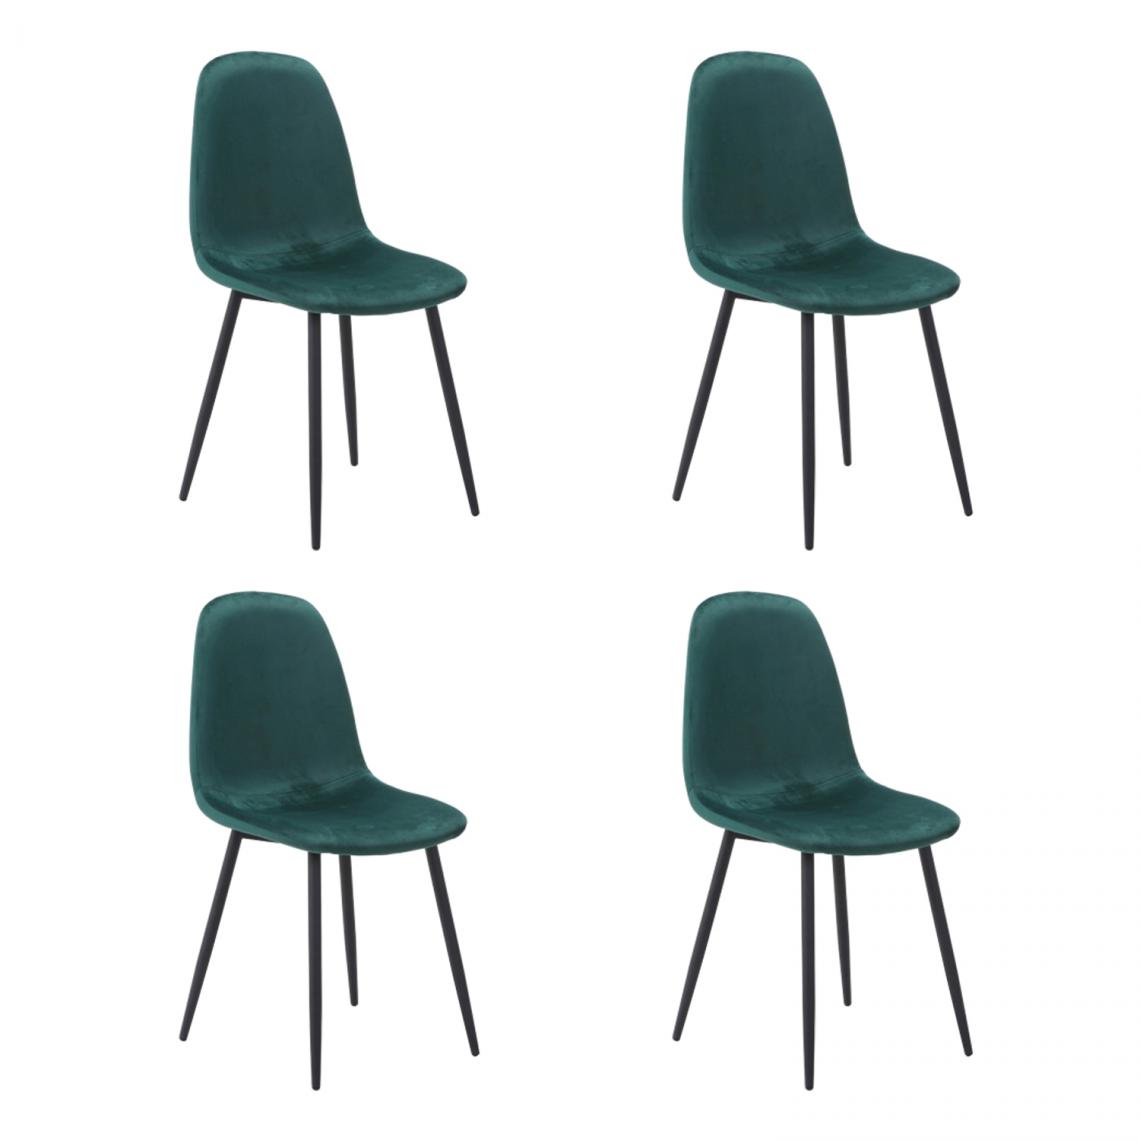 Hucoco - FOKZ - Lot de 4 chaises style scandinave - 86x44x39 cm - Tissu velouté - Pieds robustes en métal - Vert - Chaises